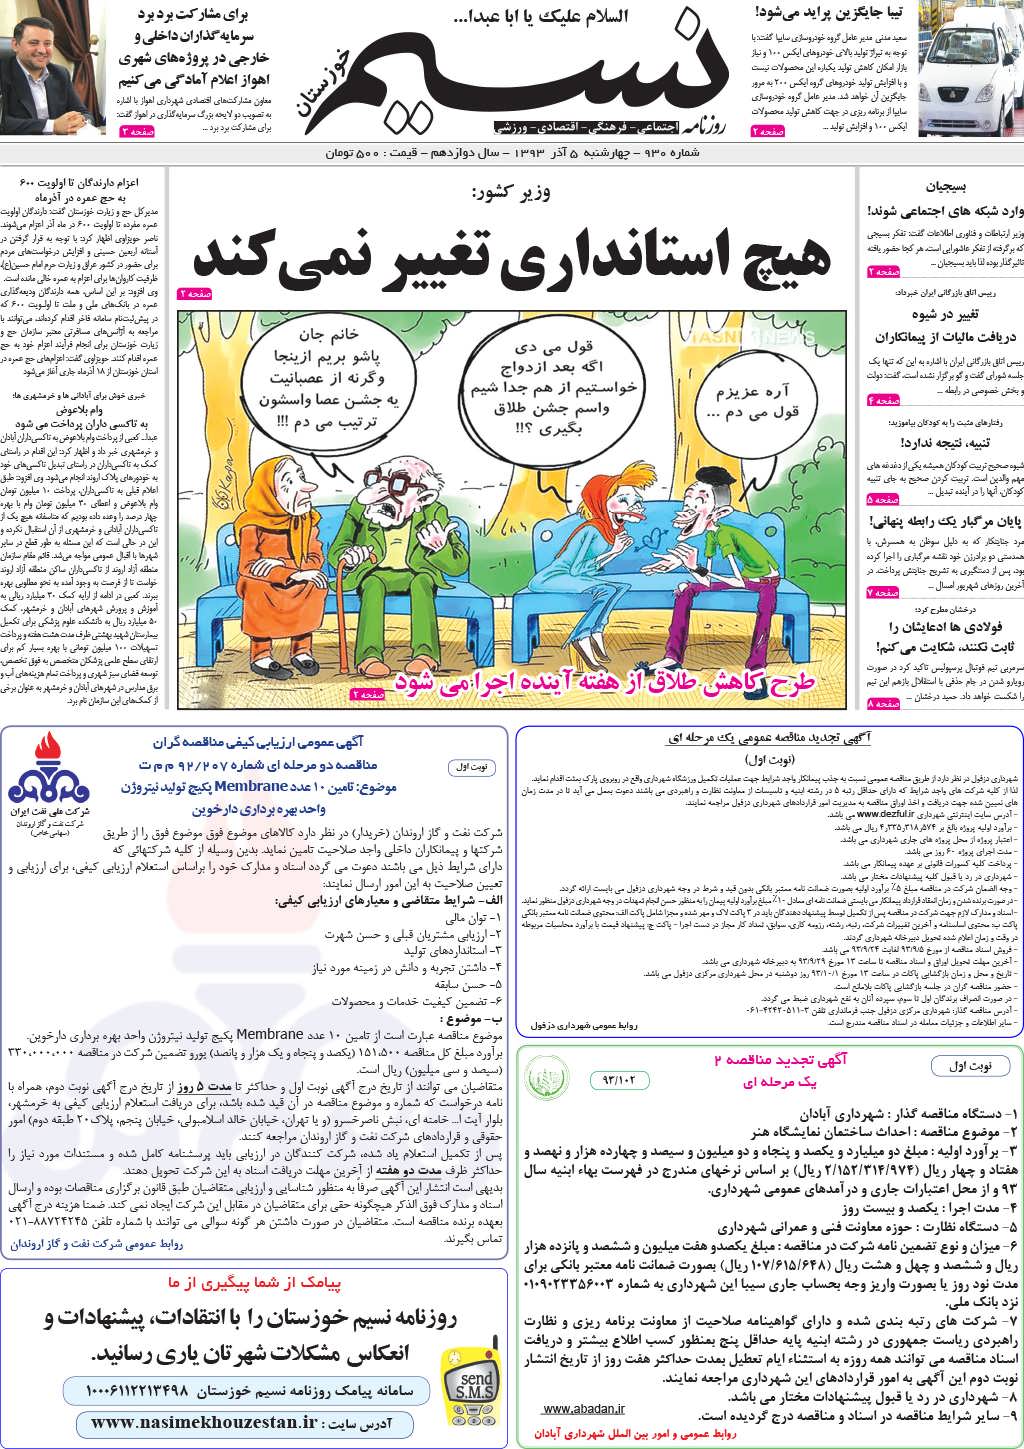 صفحه اصلی روزنامه نسیم شماره 930 